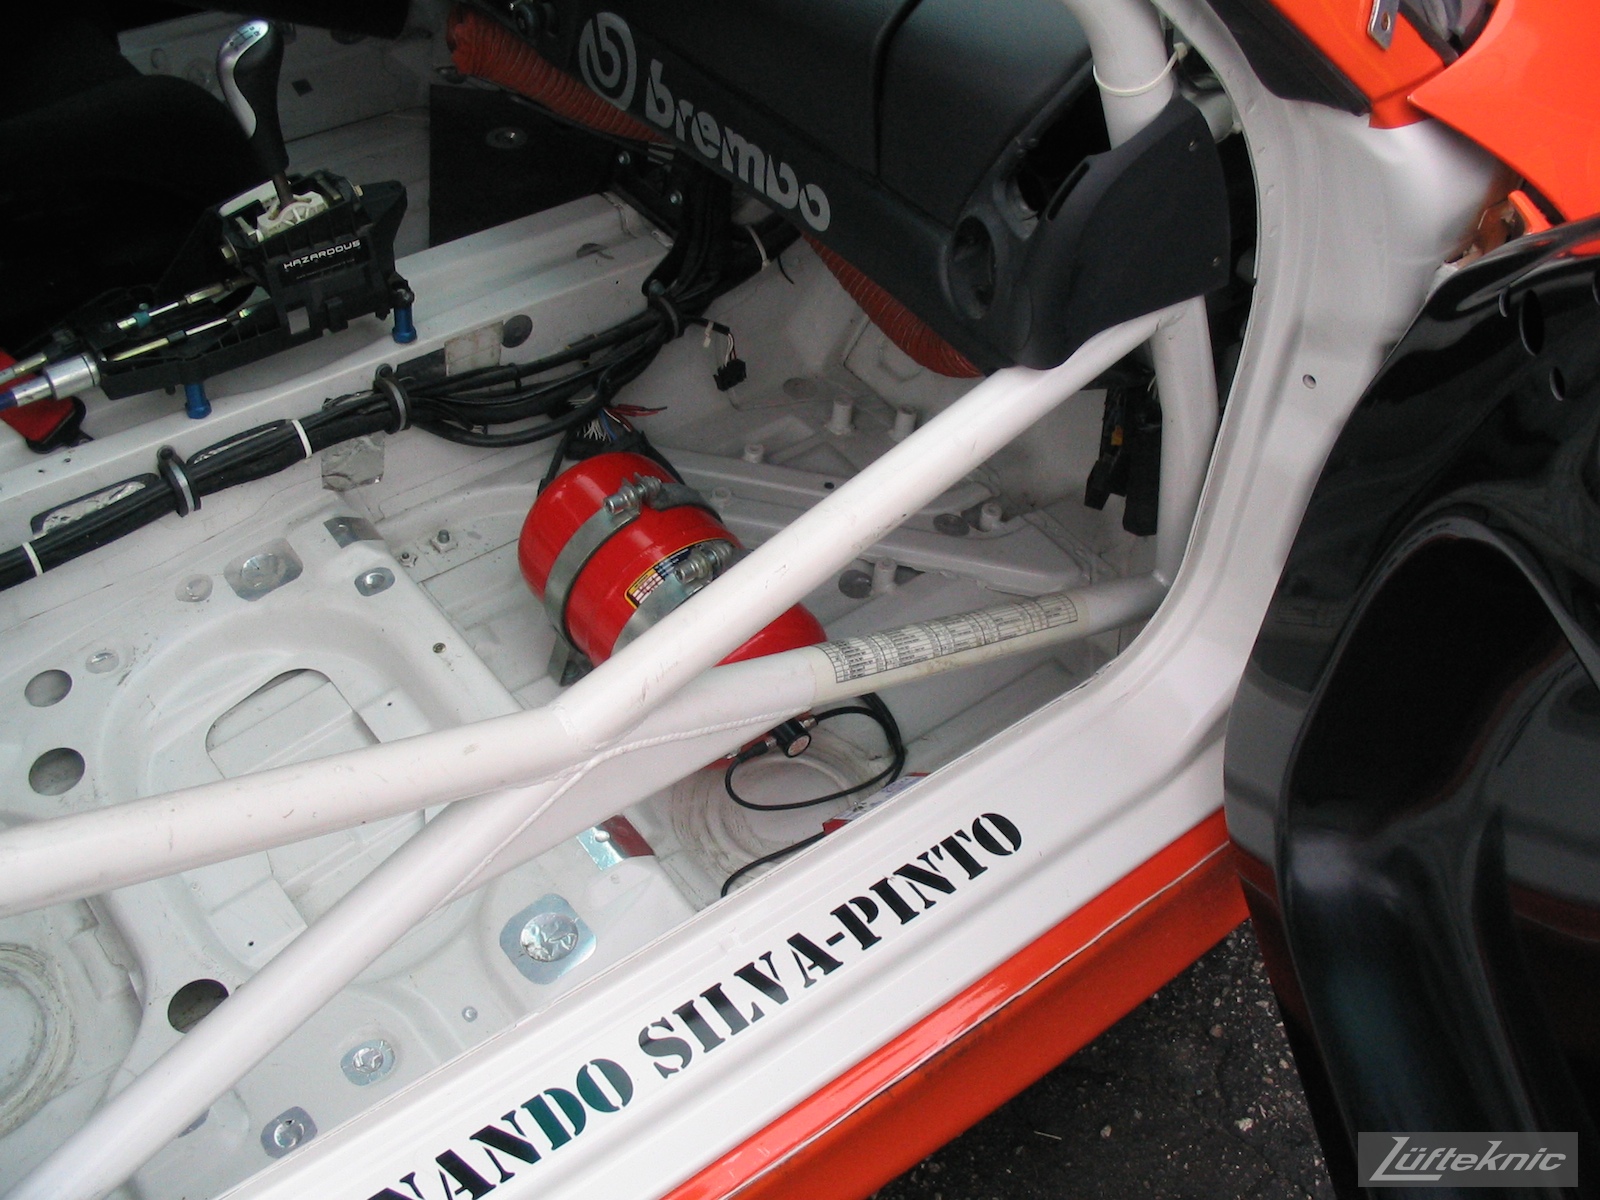 ZIP Racing Hazardous Sports Porsche 996 GT3 RS